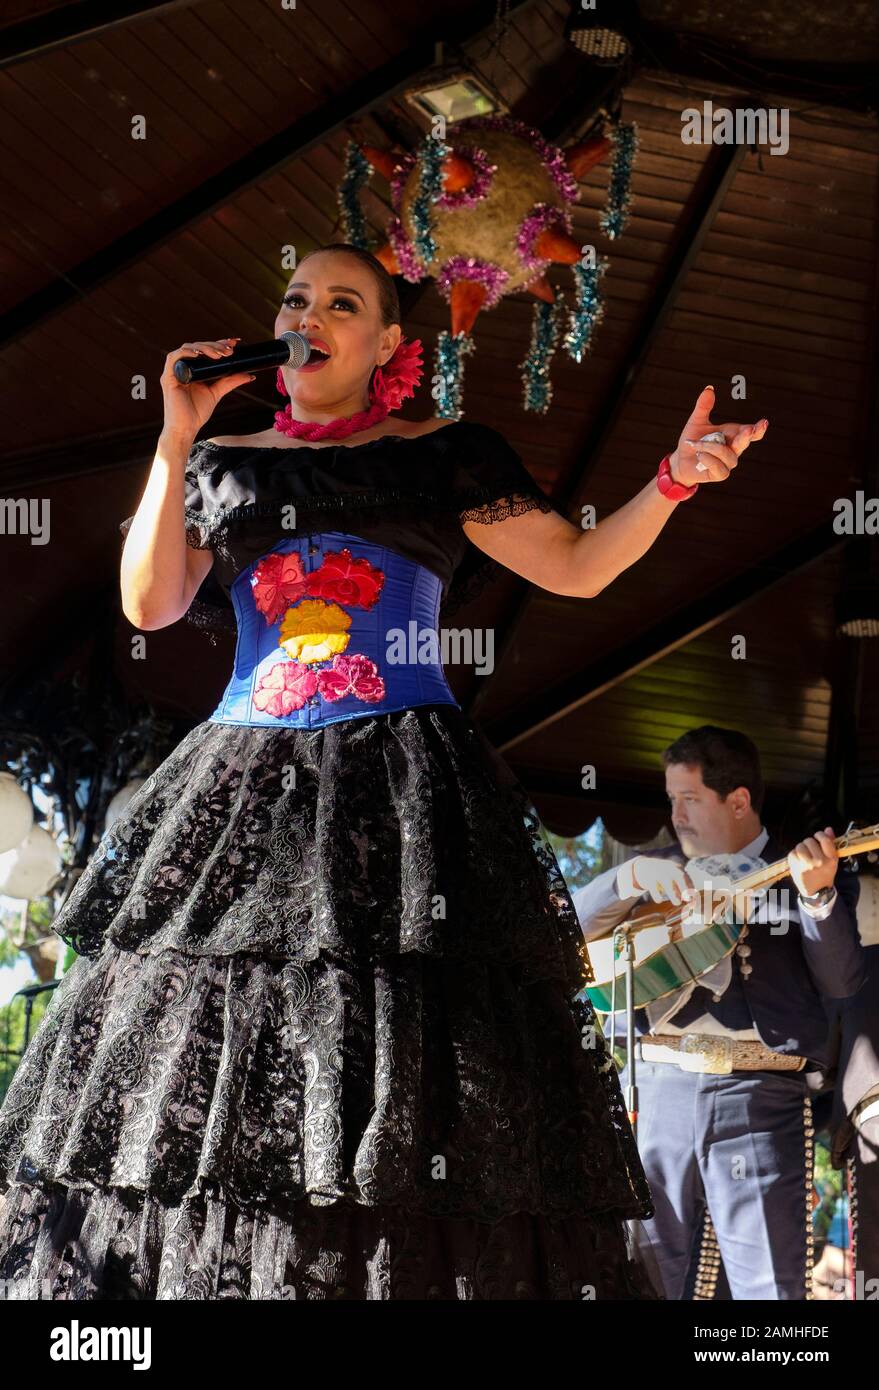 Mexican folk singer in Tlakquepaque, Mexico Stock Photo